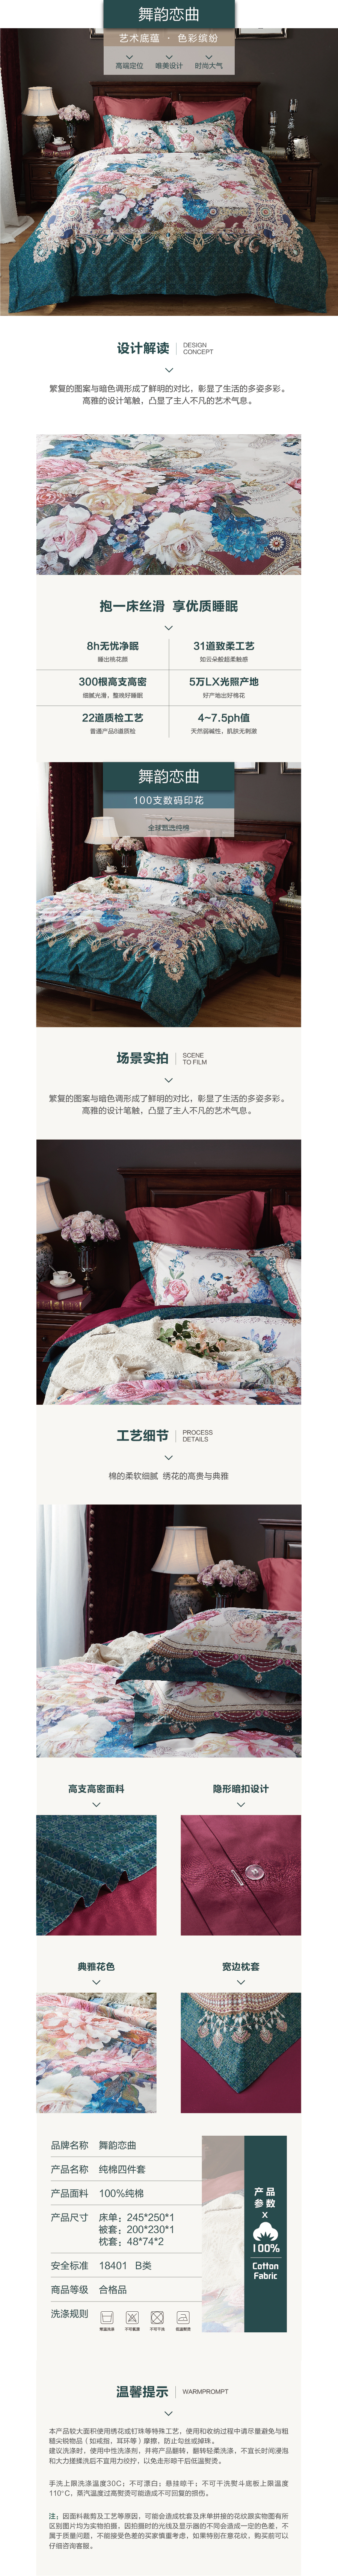 床上用品 纯棉四件套 蕾丝工艺 数码印花系列 舞韵恋曲